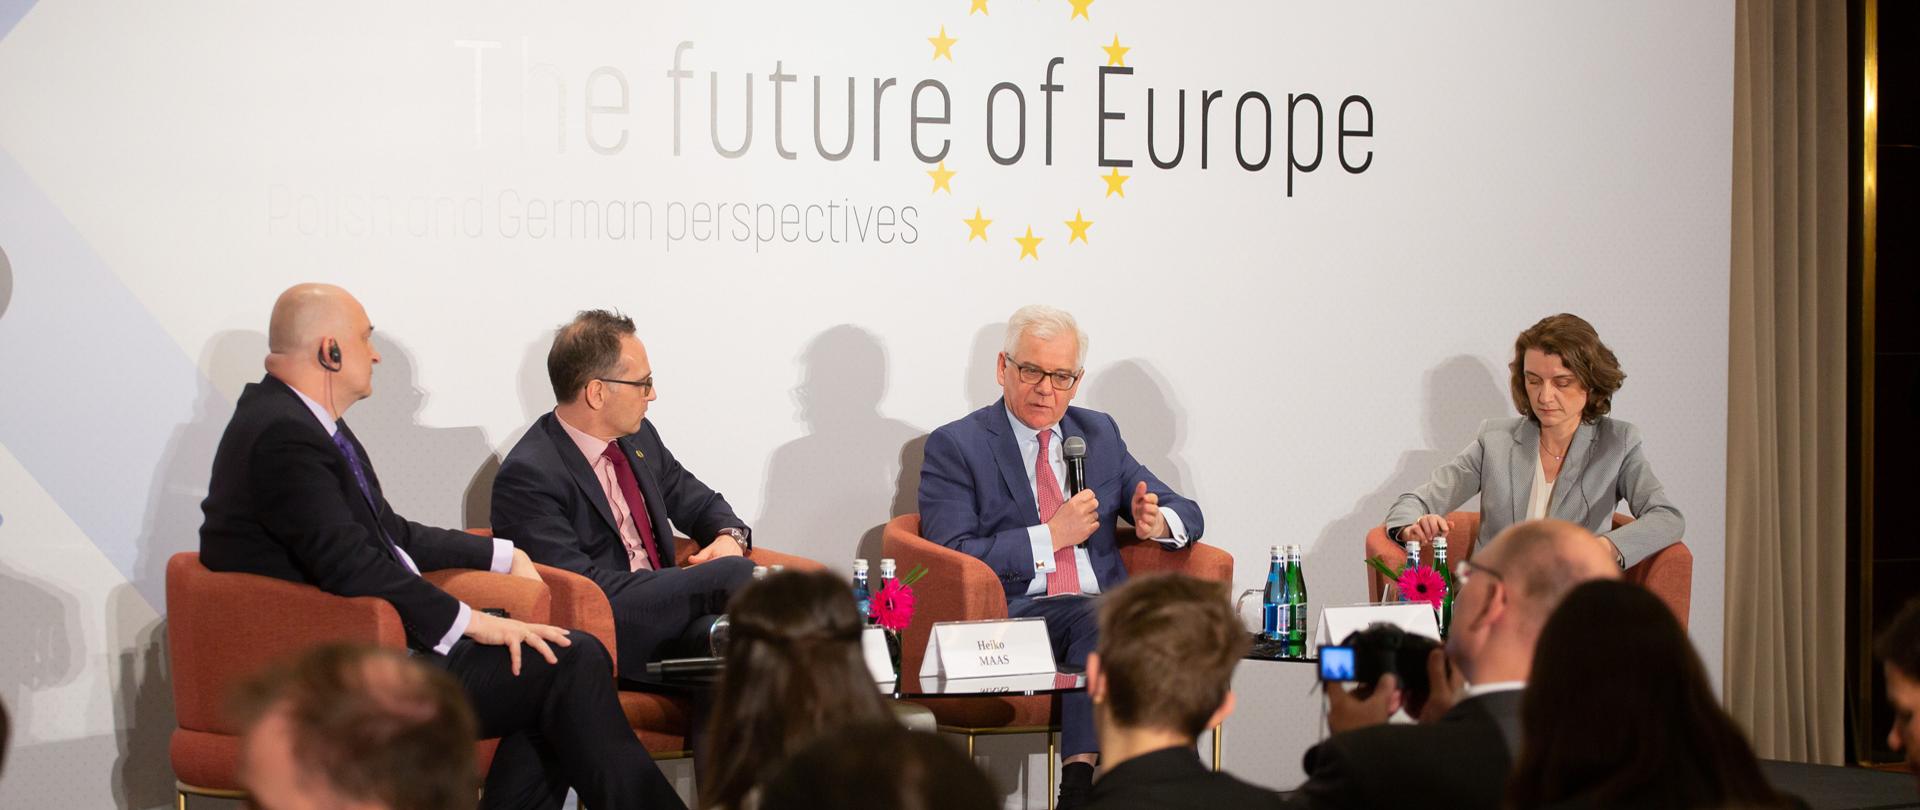 The future of Europe debate